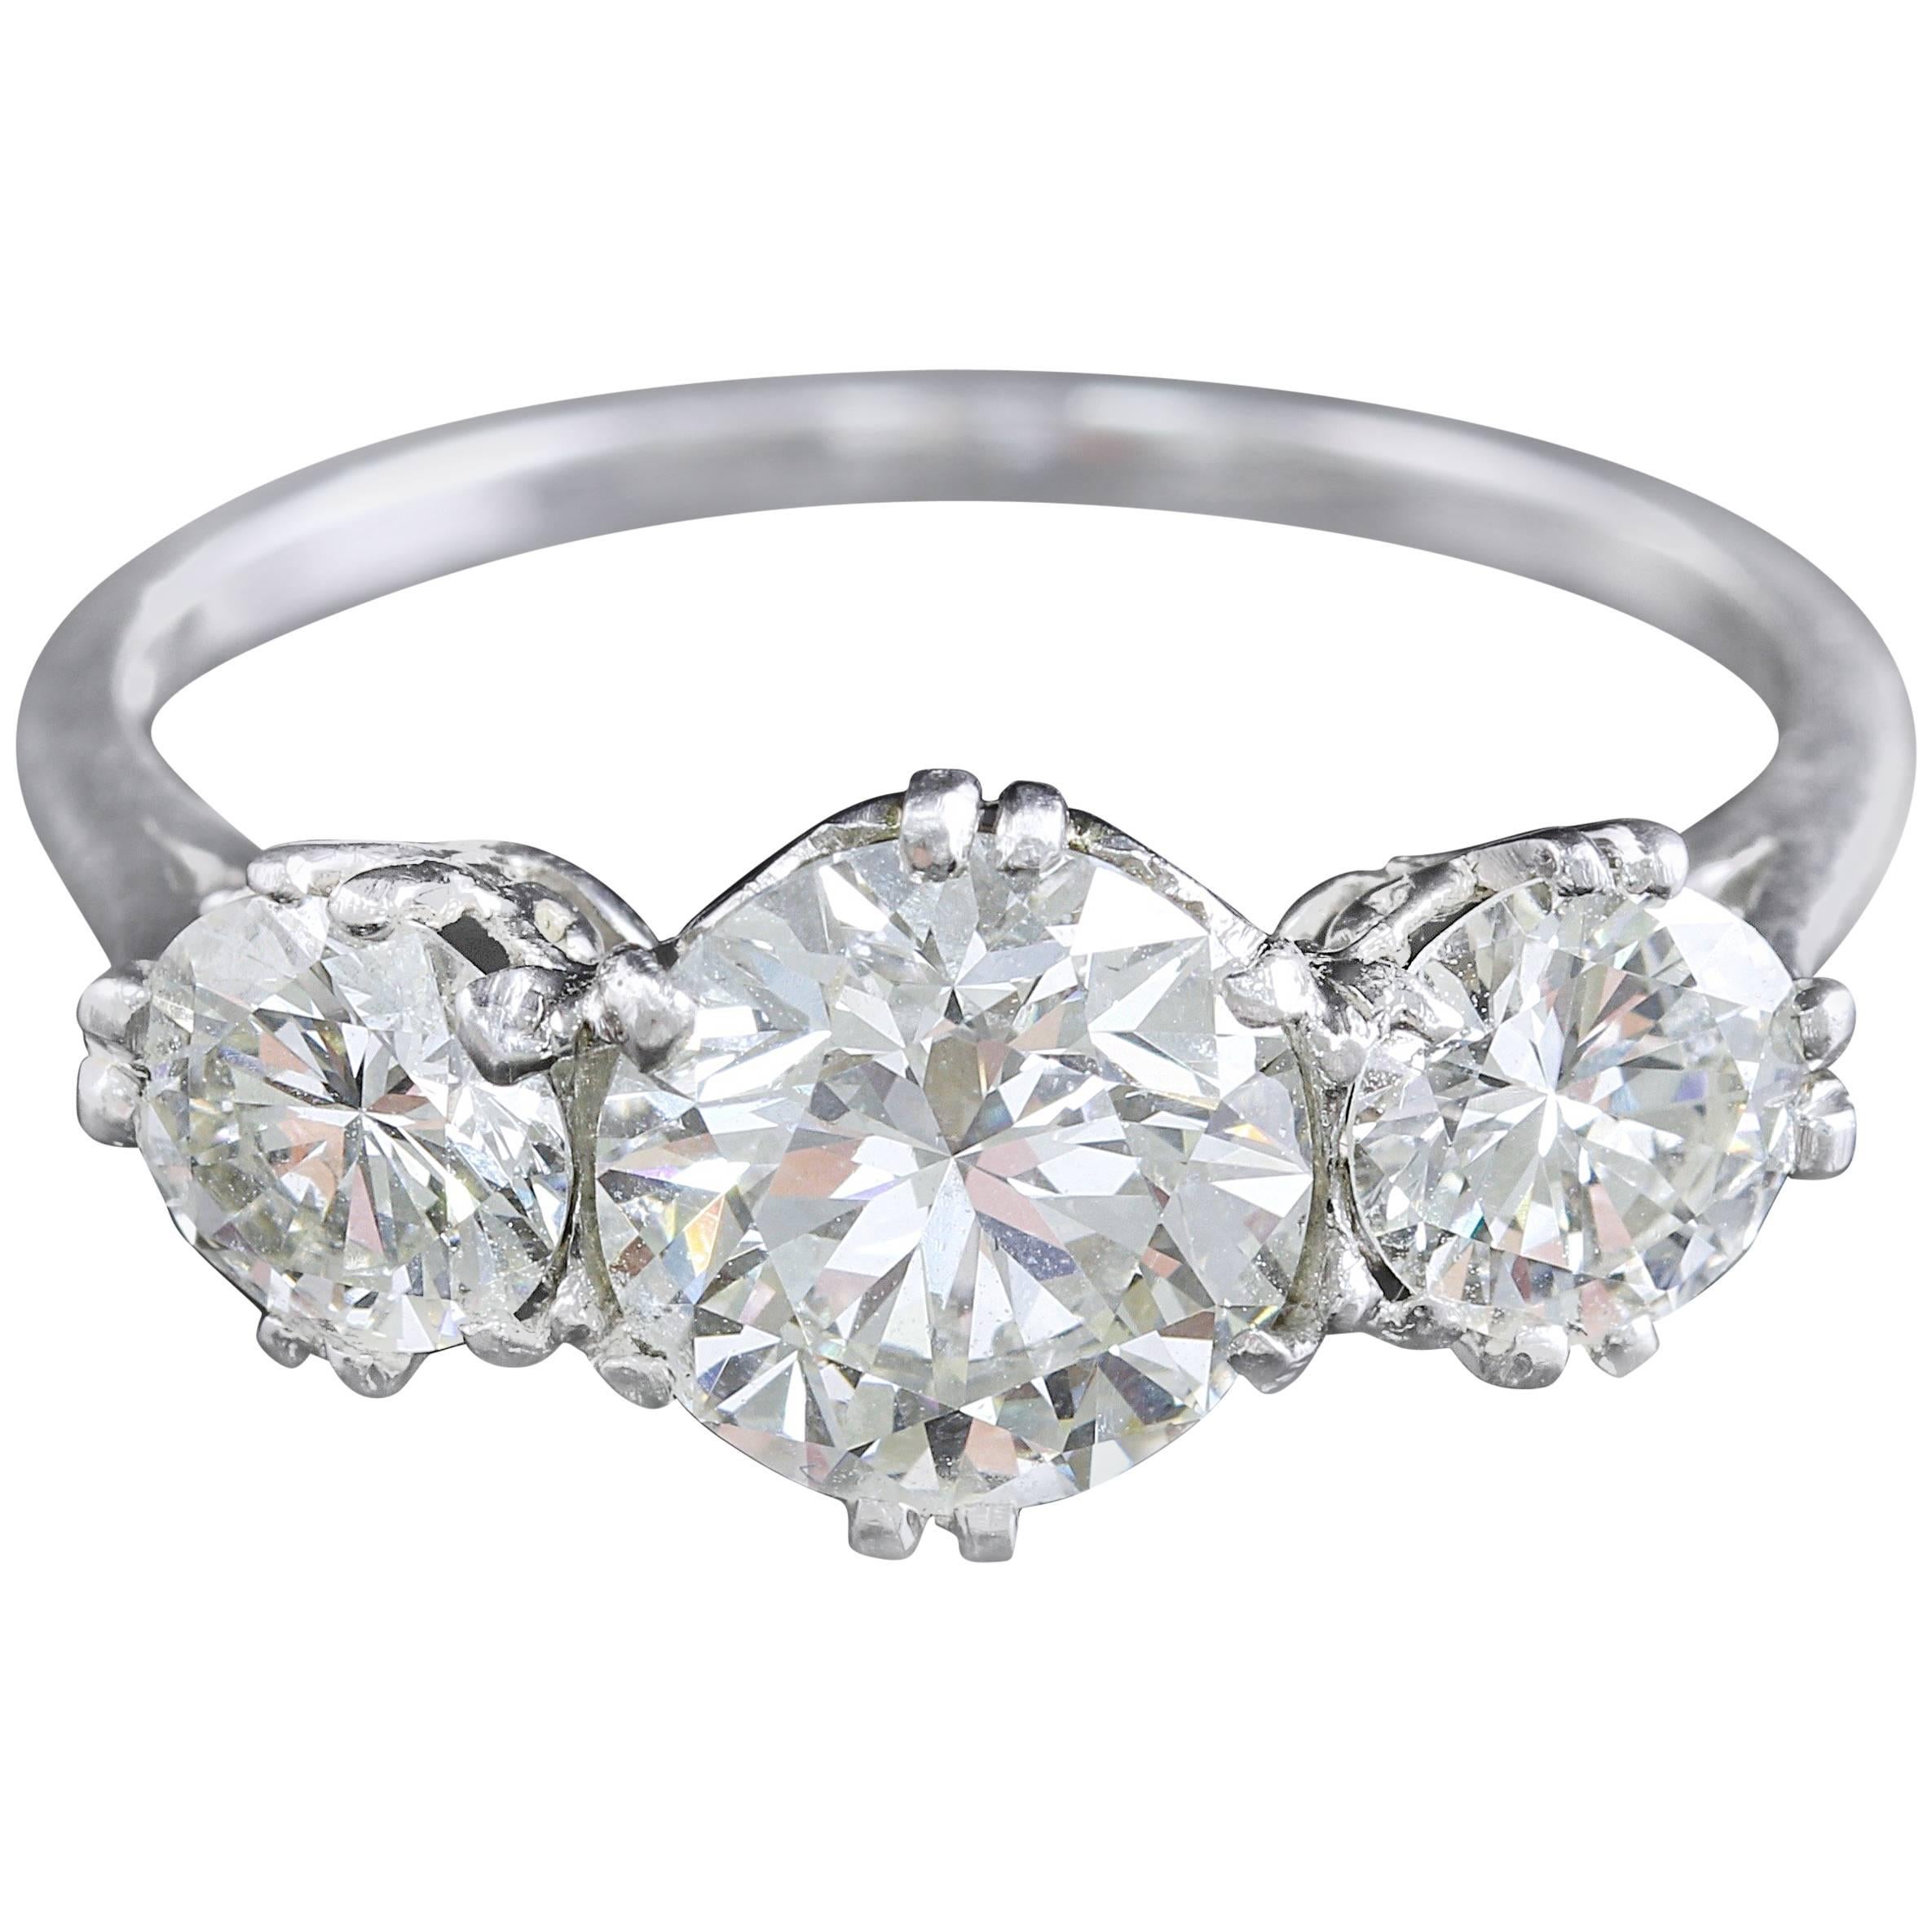 Platinum Edwardian Diamond Trilogy Ring 2.76 Carat Total